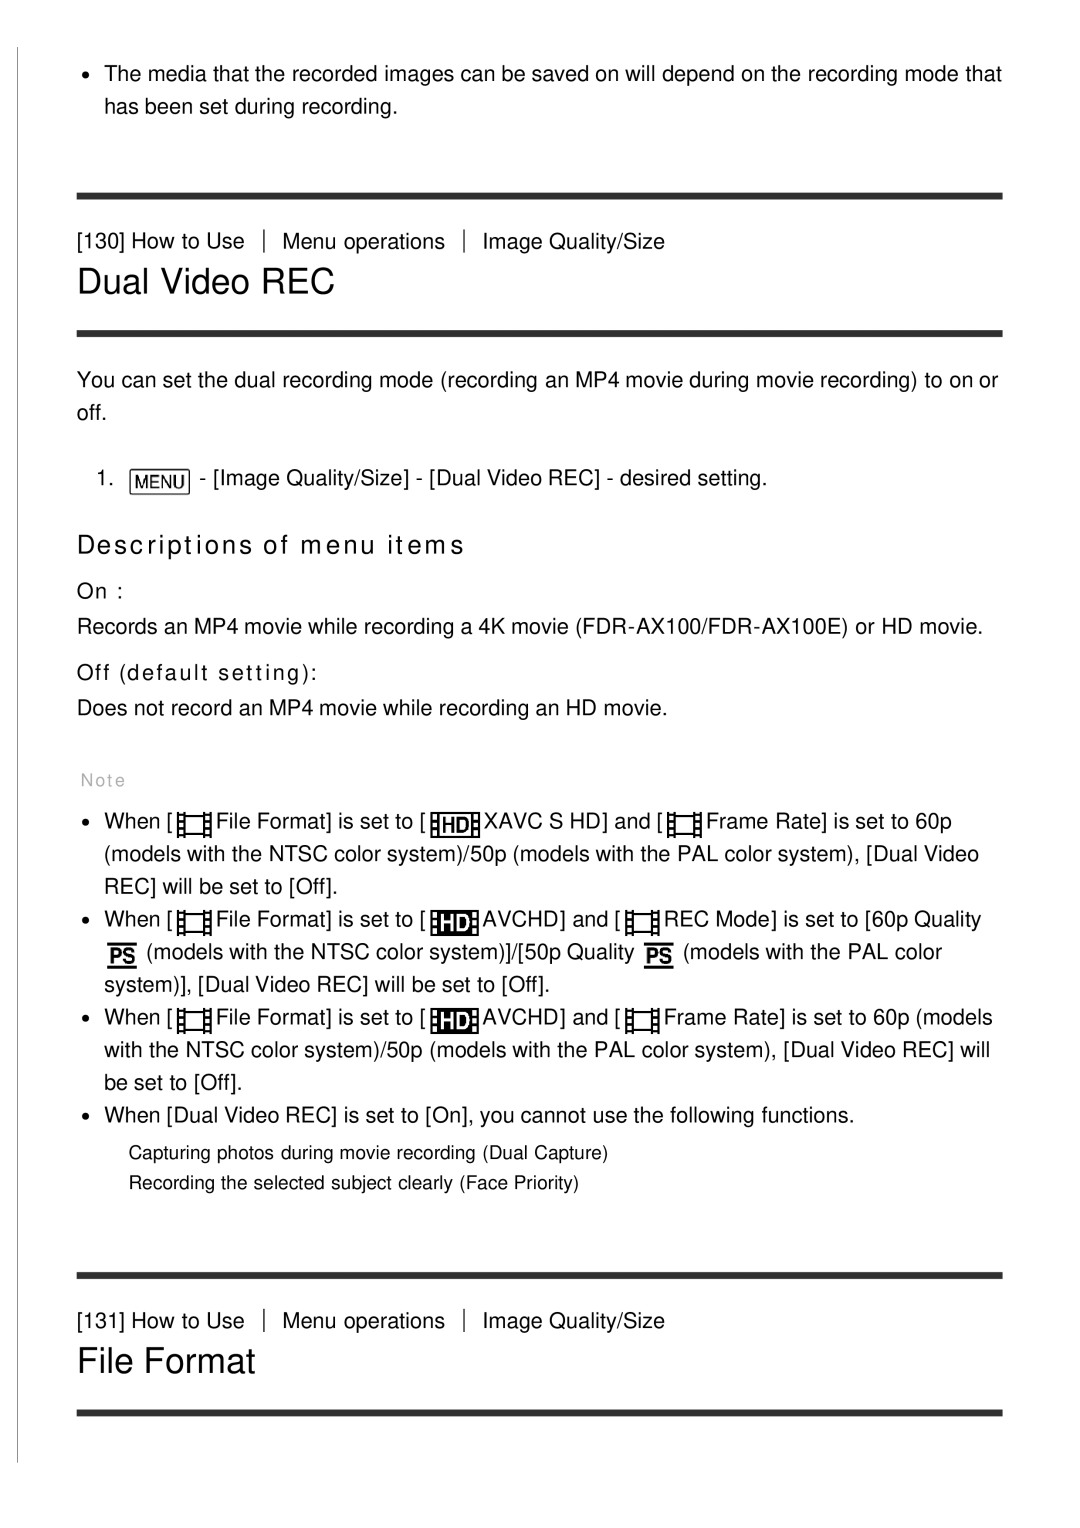 Sony HDR-CX900E, FDR-AX100E manual Dual Video REC, File Format, Descriptions of menu items, Off default setting 